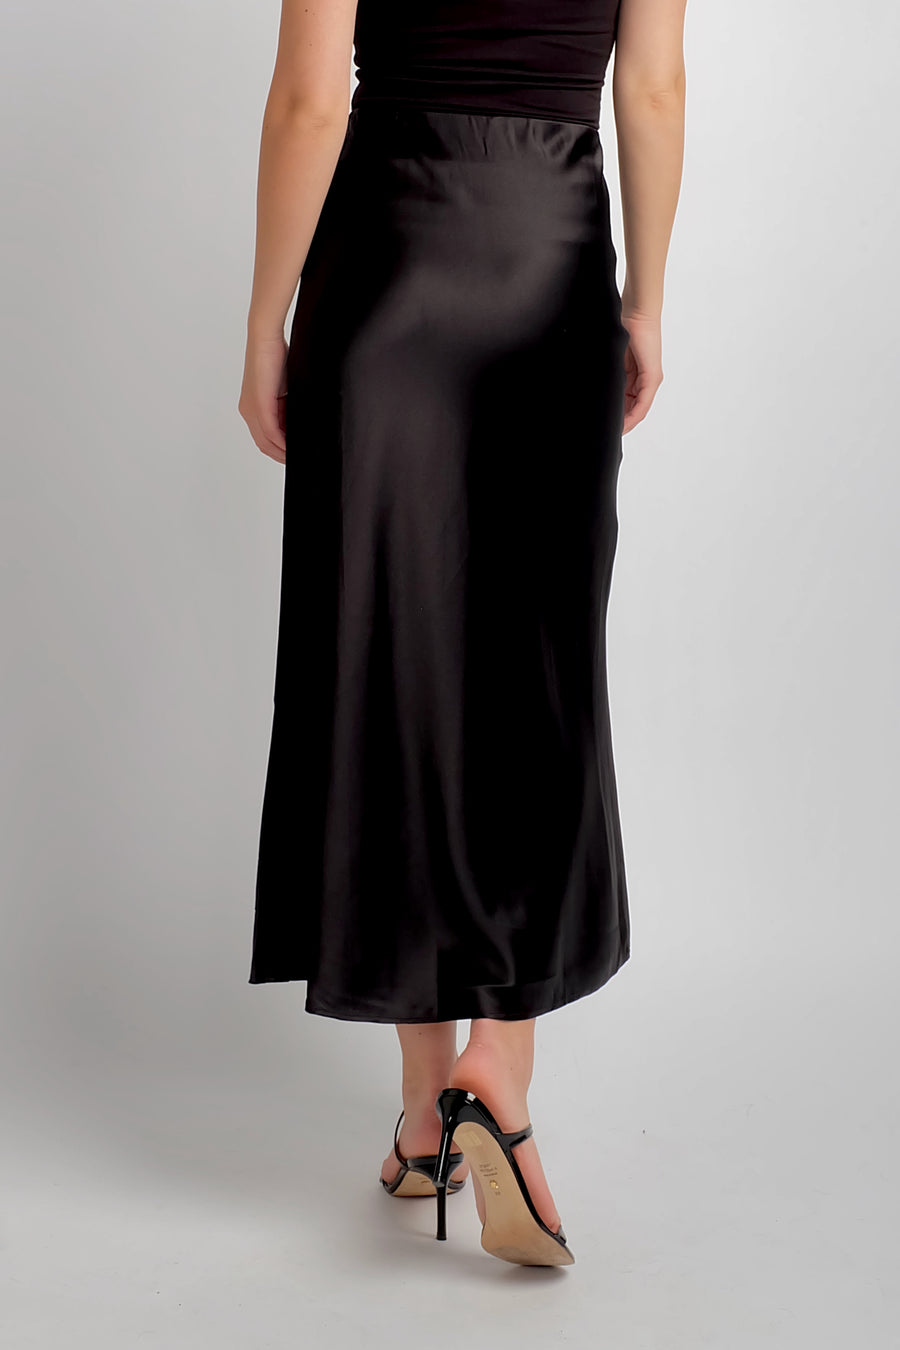 women's black silk maxi skirt